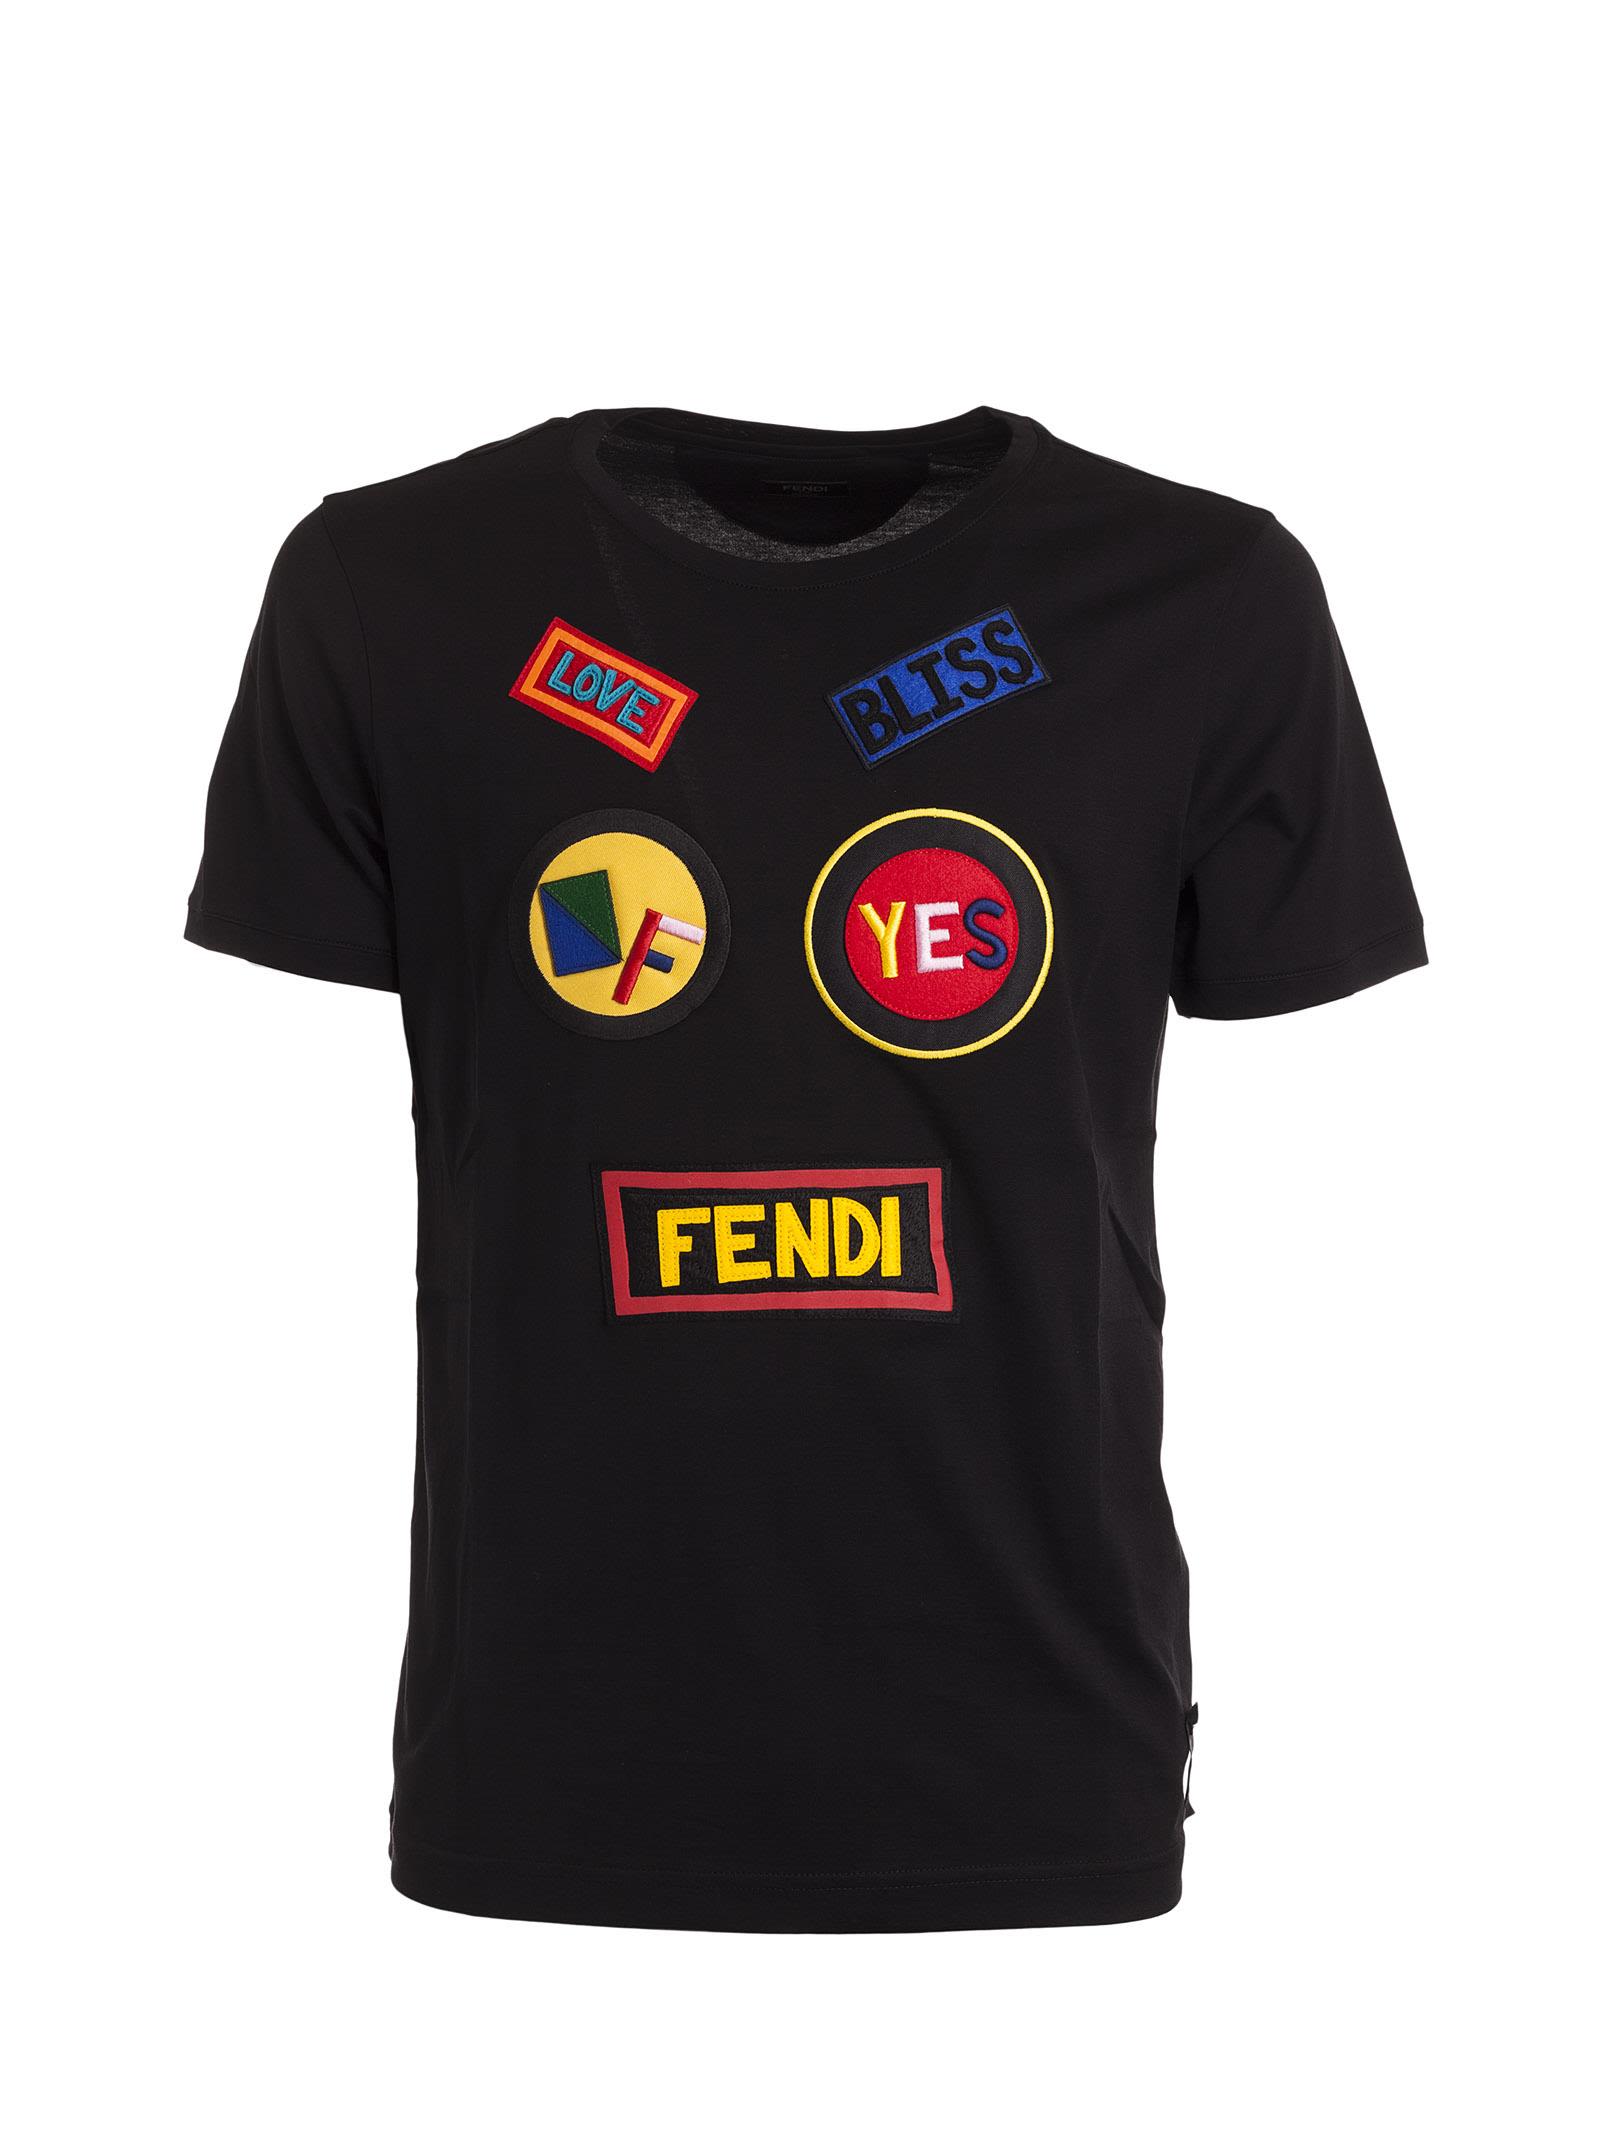 FENDI Patch Appliqué Cotton-Jersey T-Shirt, Black | ModeSens